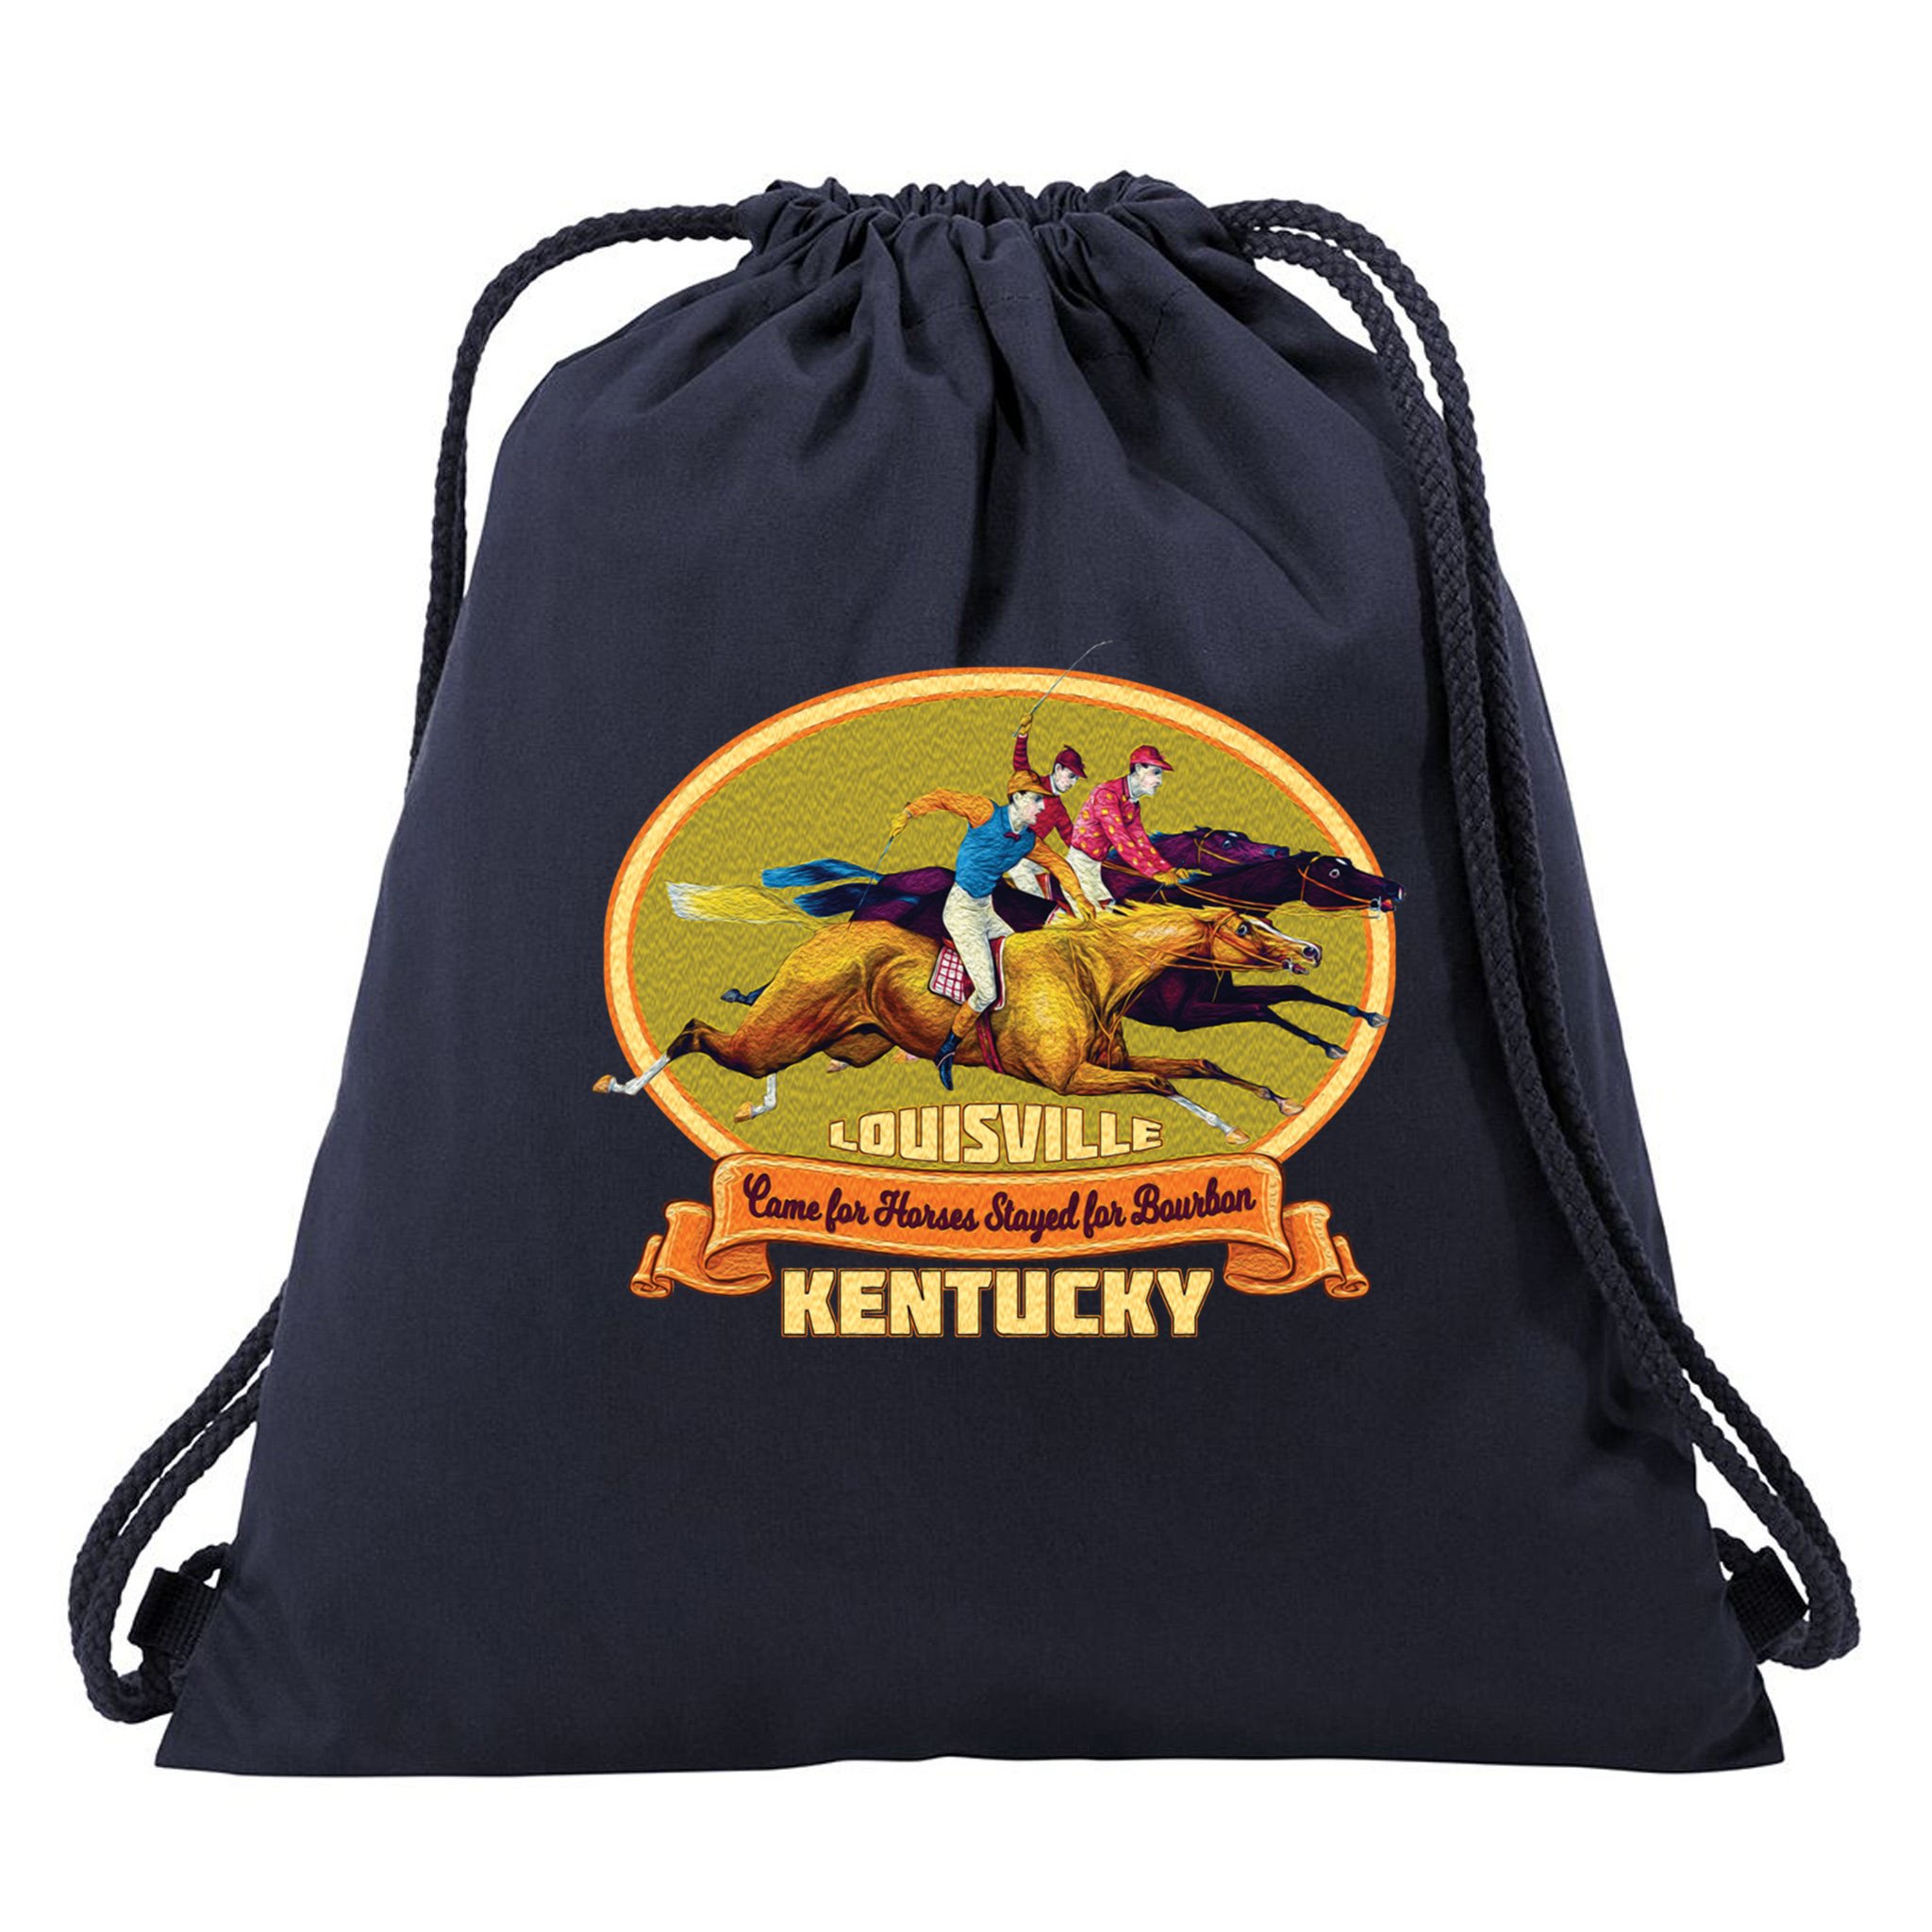 Fanny Packs for sale in Louisville, Kentucky